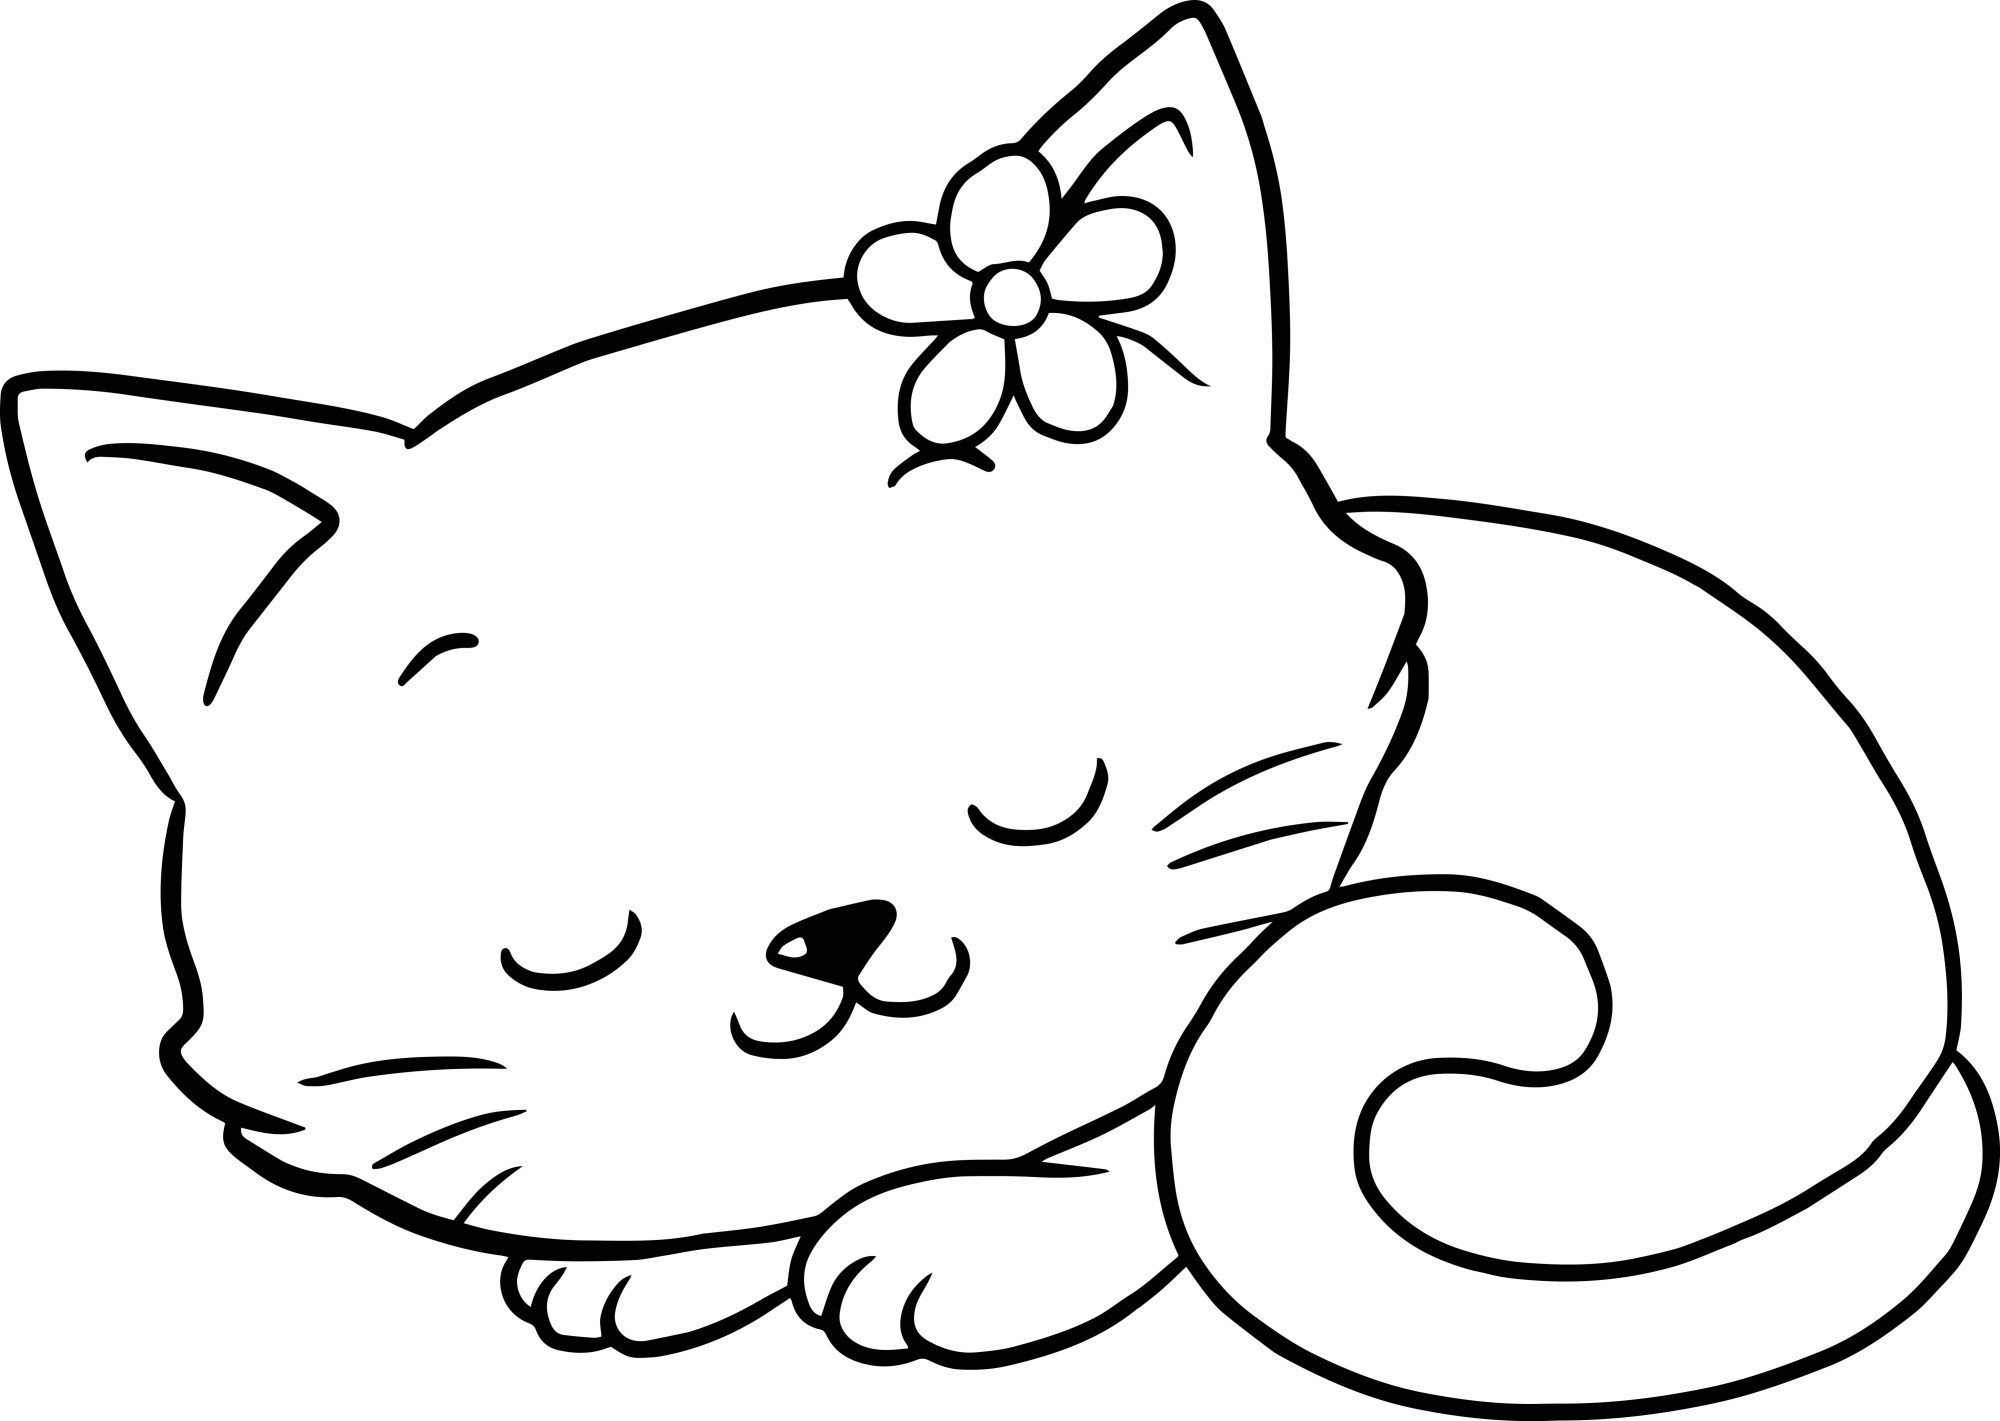 Раскраска для детей: спящая маленькая кошечка с цветком на голове